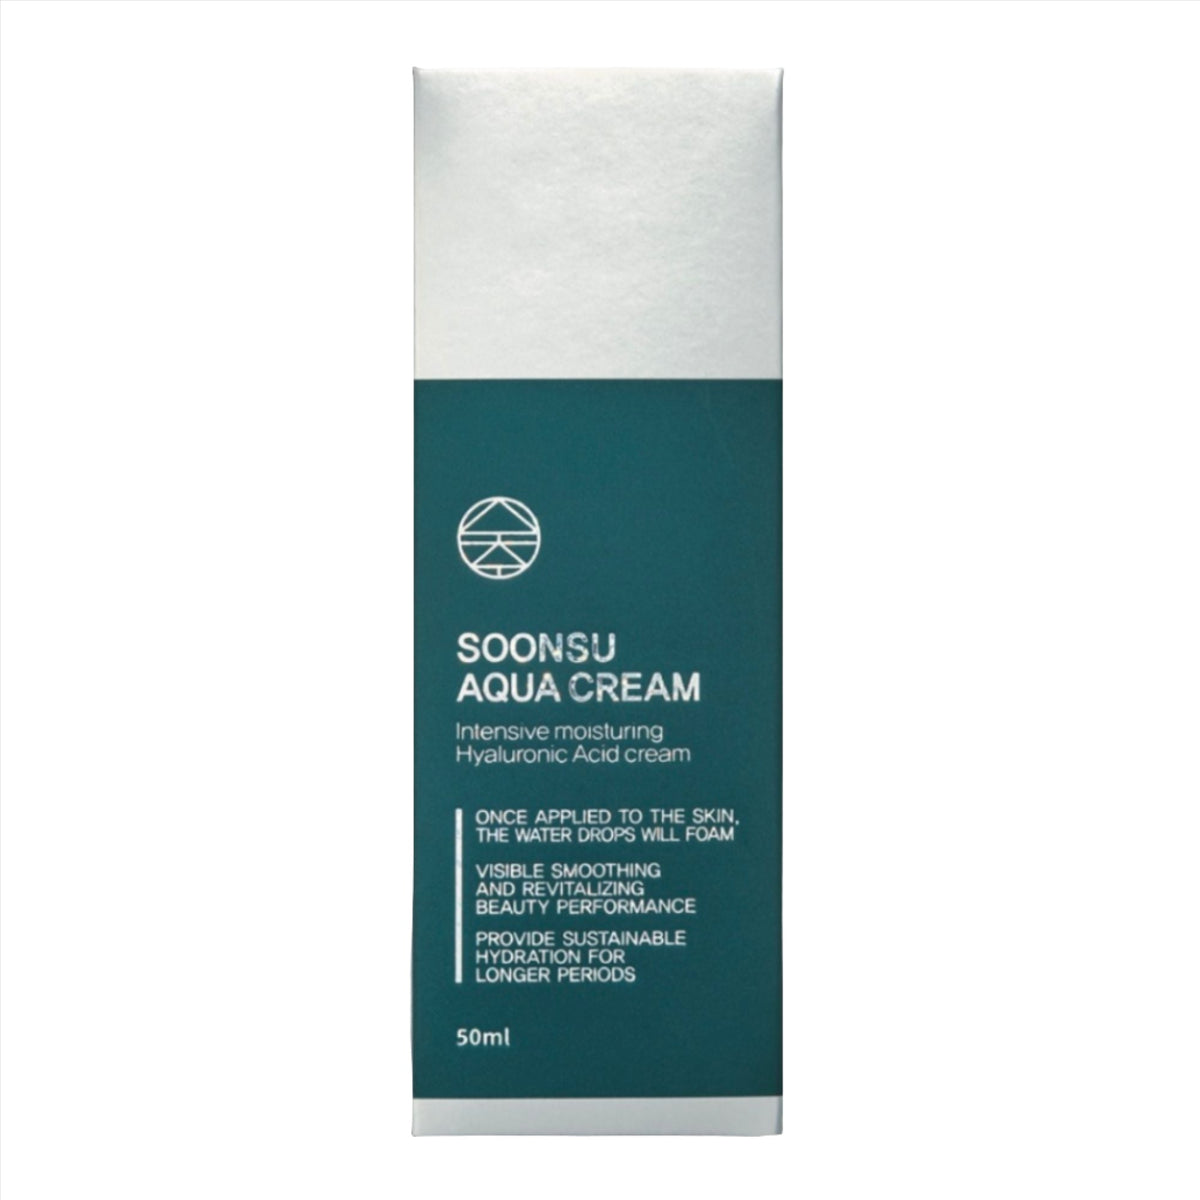 Soonsu Aqua Cream - Filler Lux™ - SKIN CARE - Soonsu